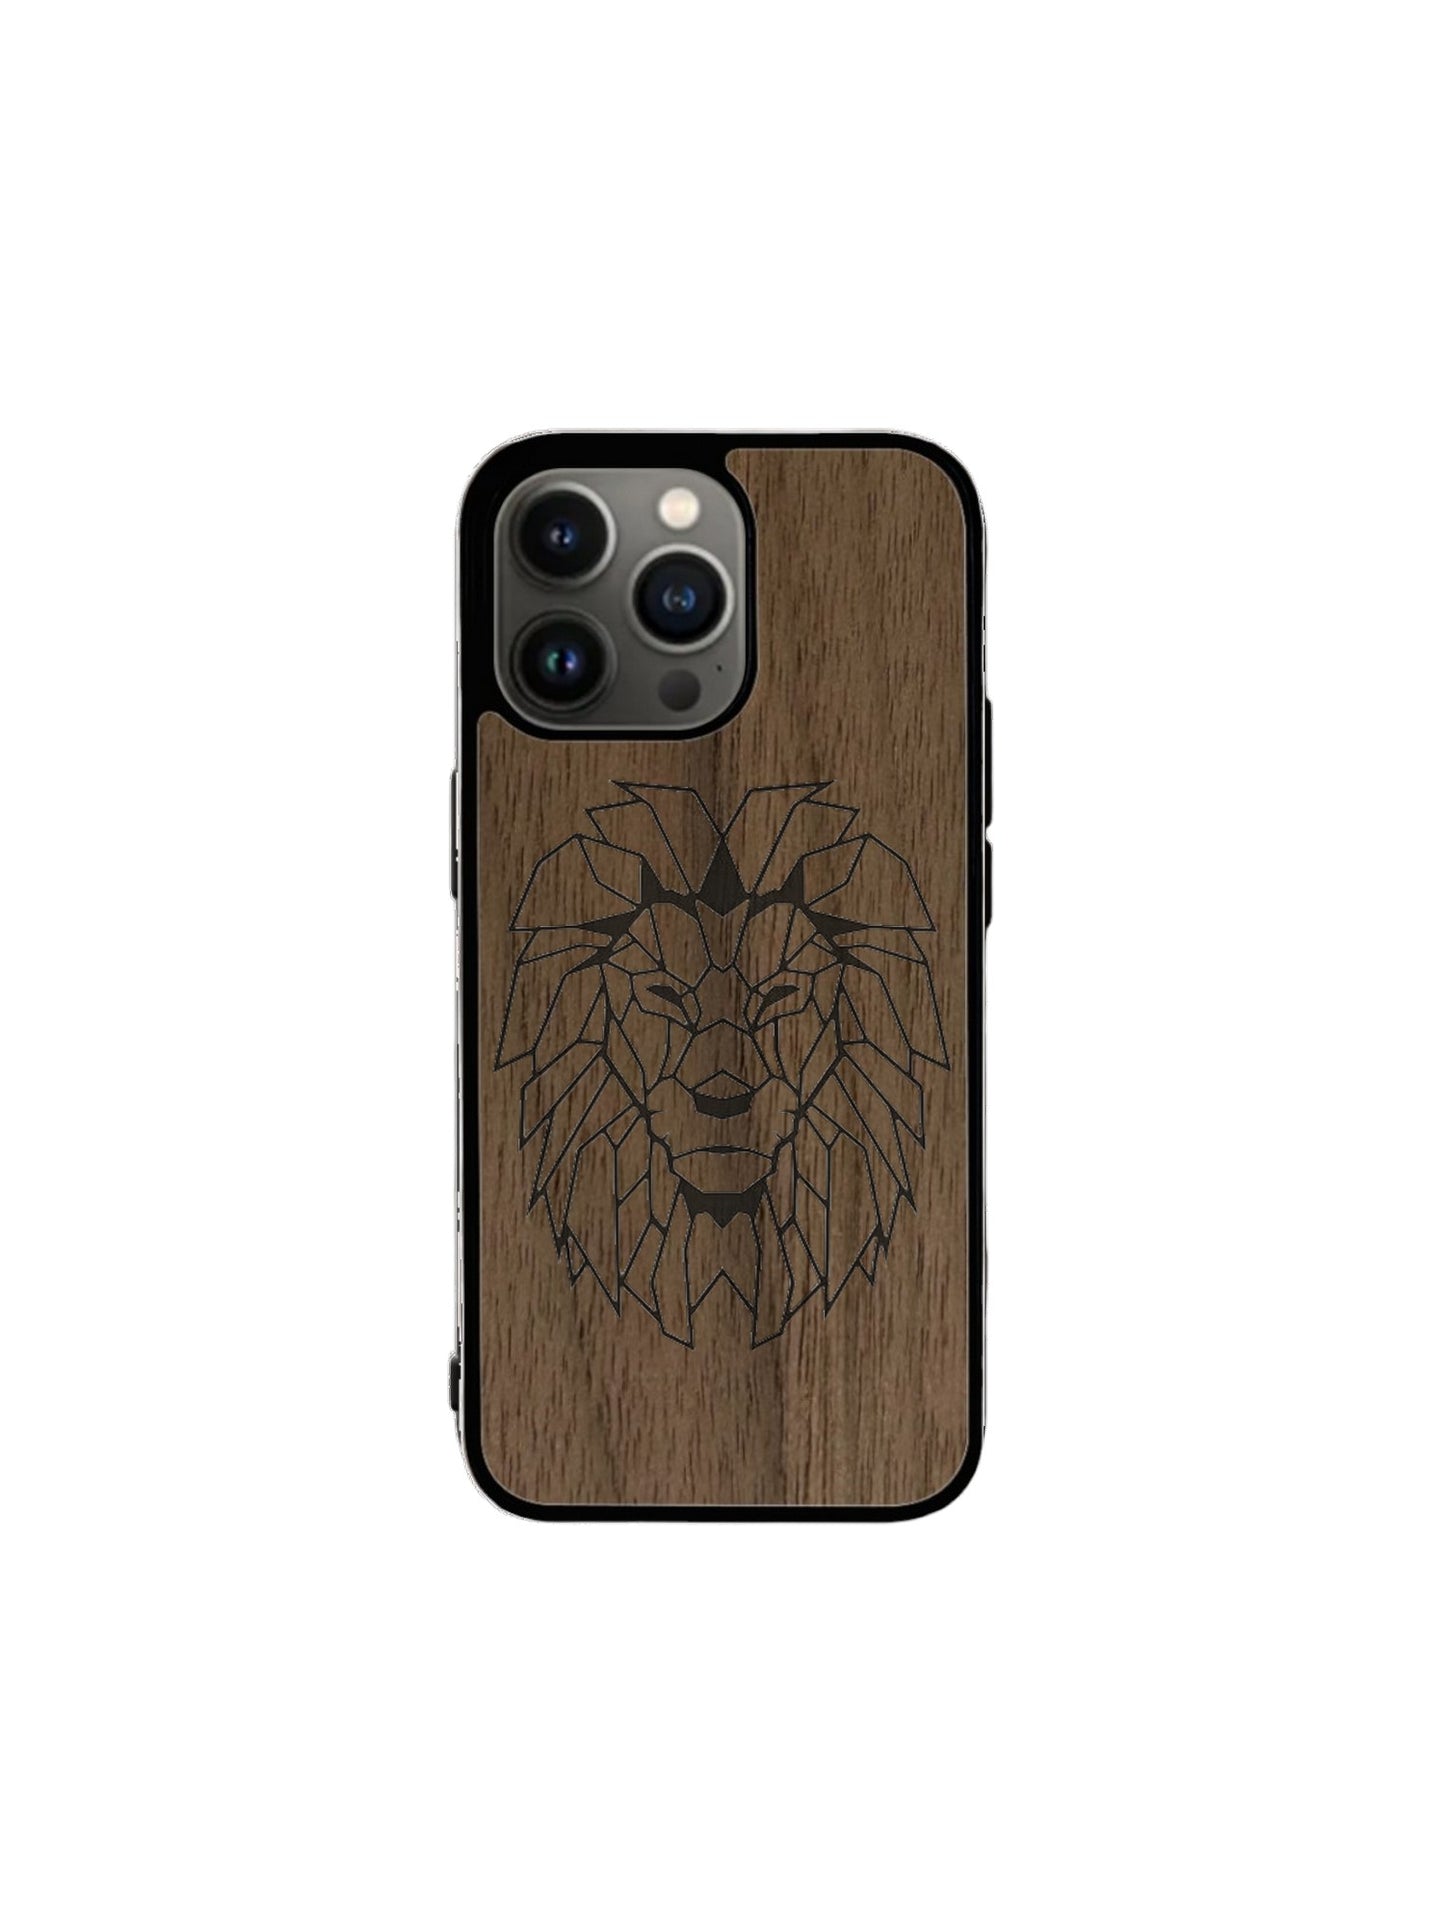 Coque Iphone - Lion Gravure